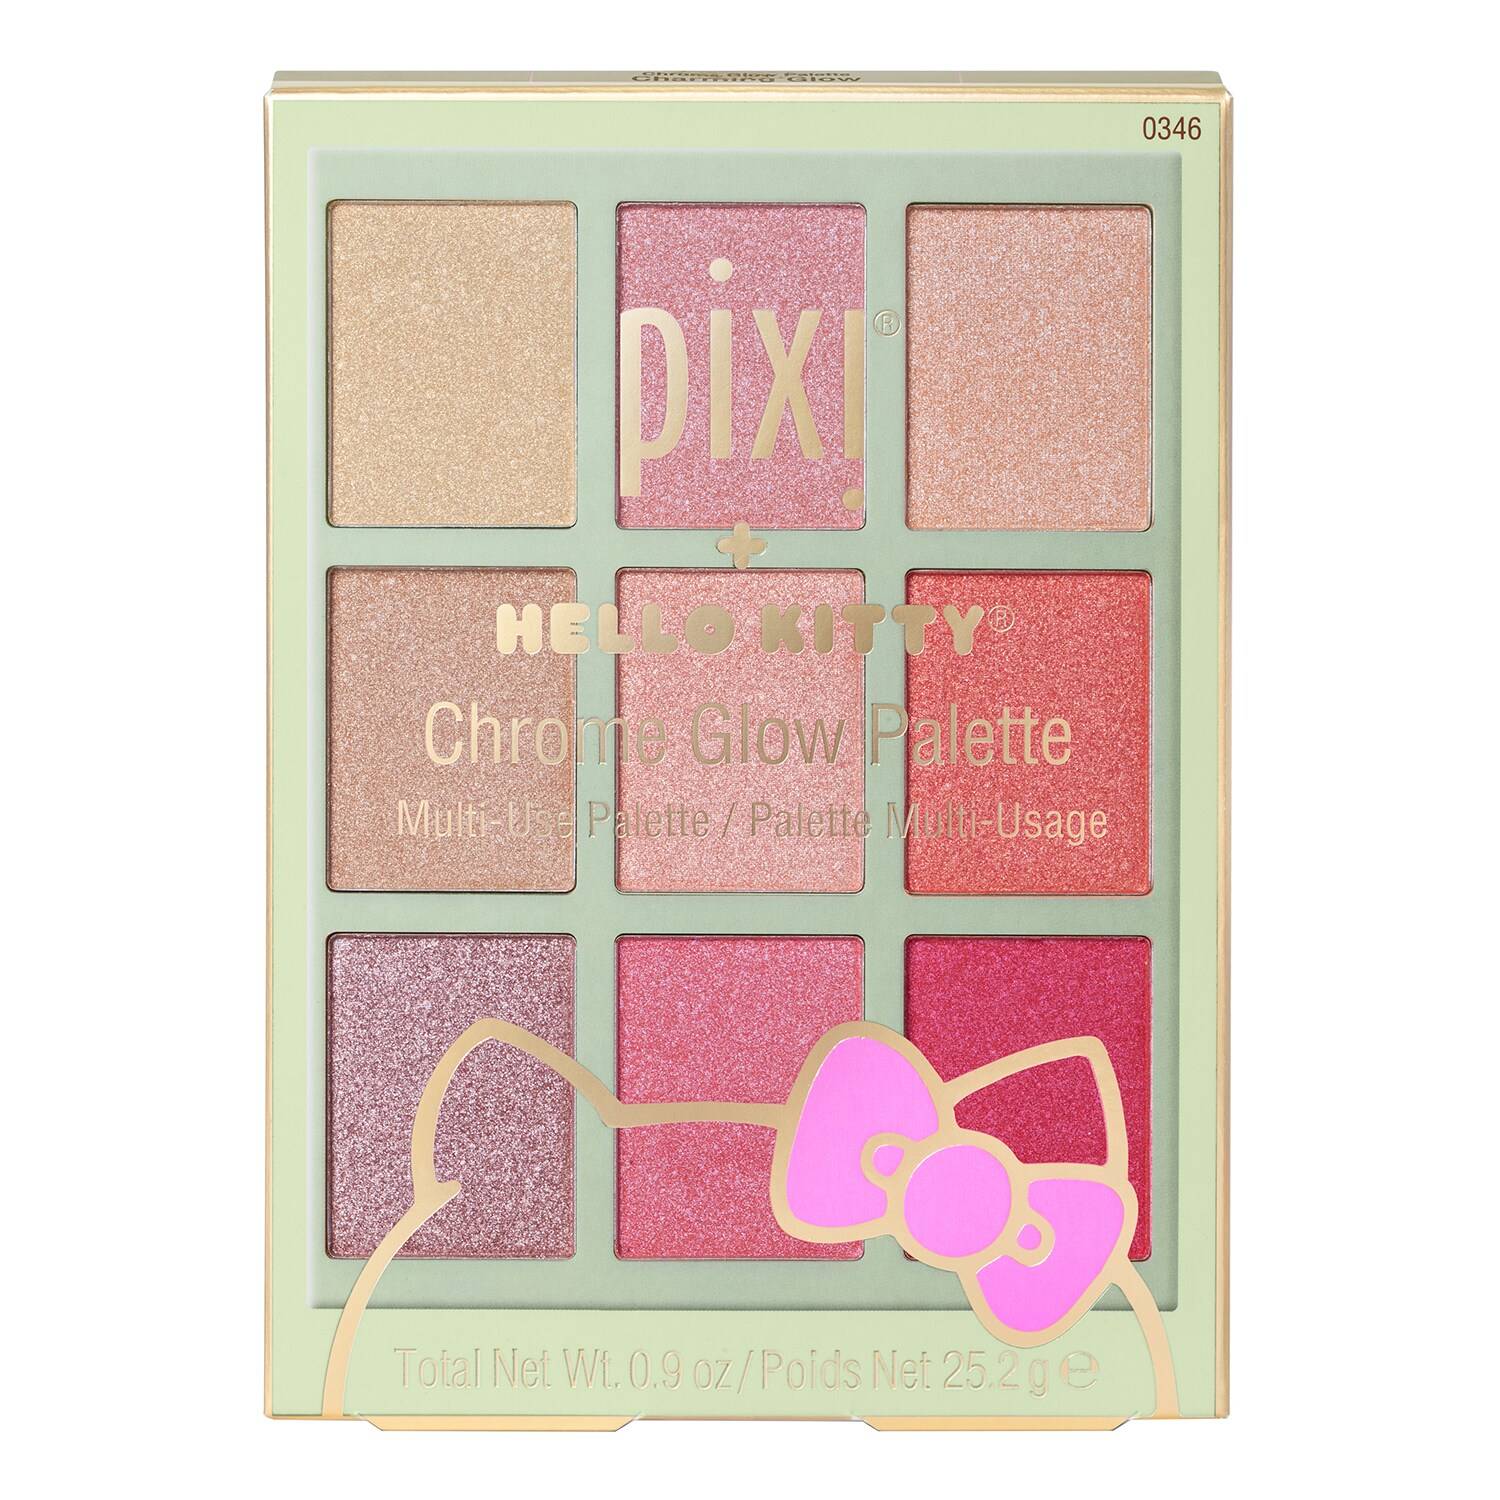 Pixi + Hello Kitty Chrome Glow Palette 25.2G Charming Glow